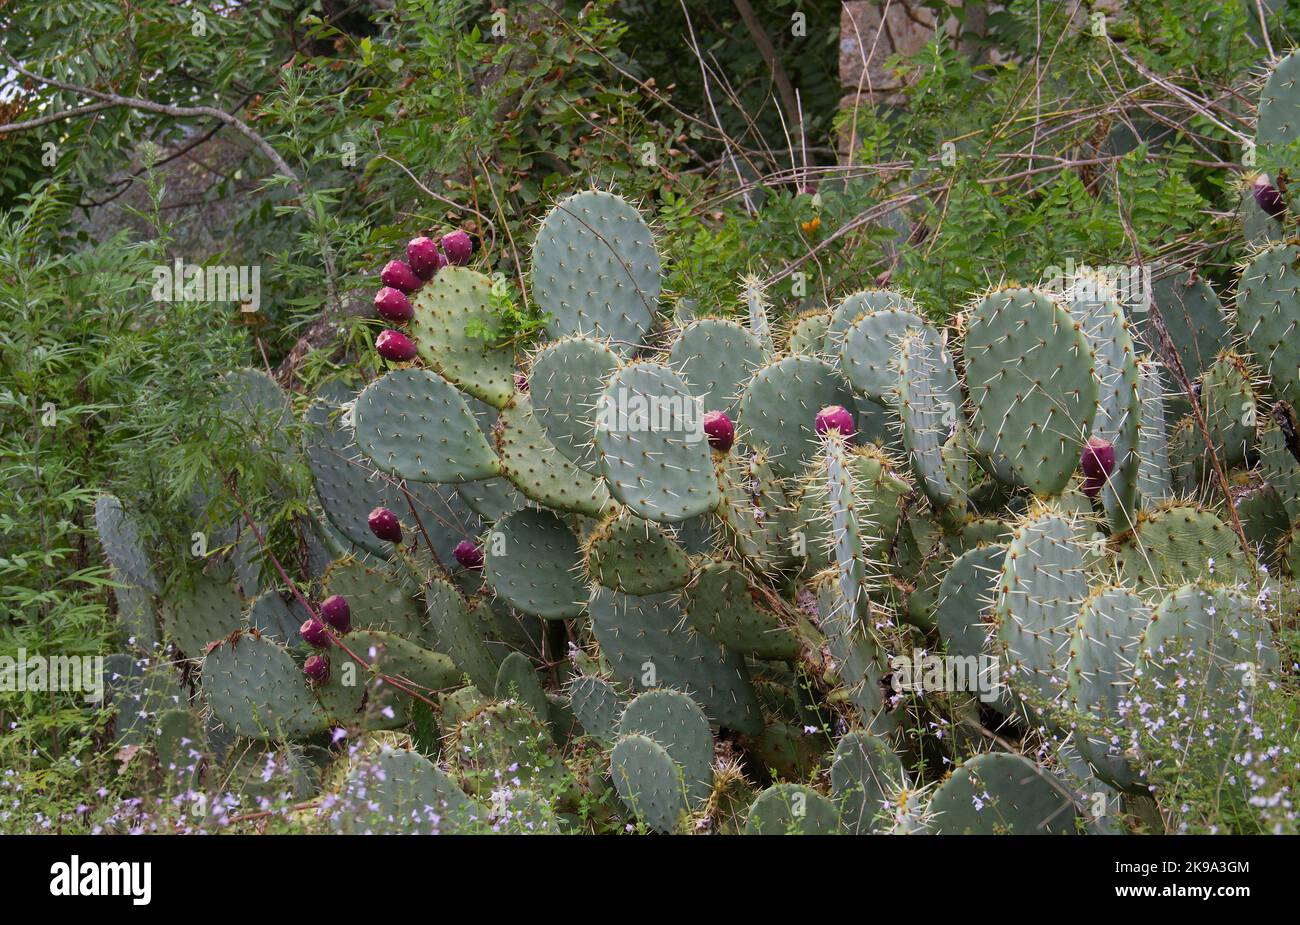 Cactus de pera espinosa con nopales y frutos rojos Foto de stock